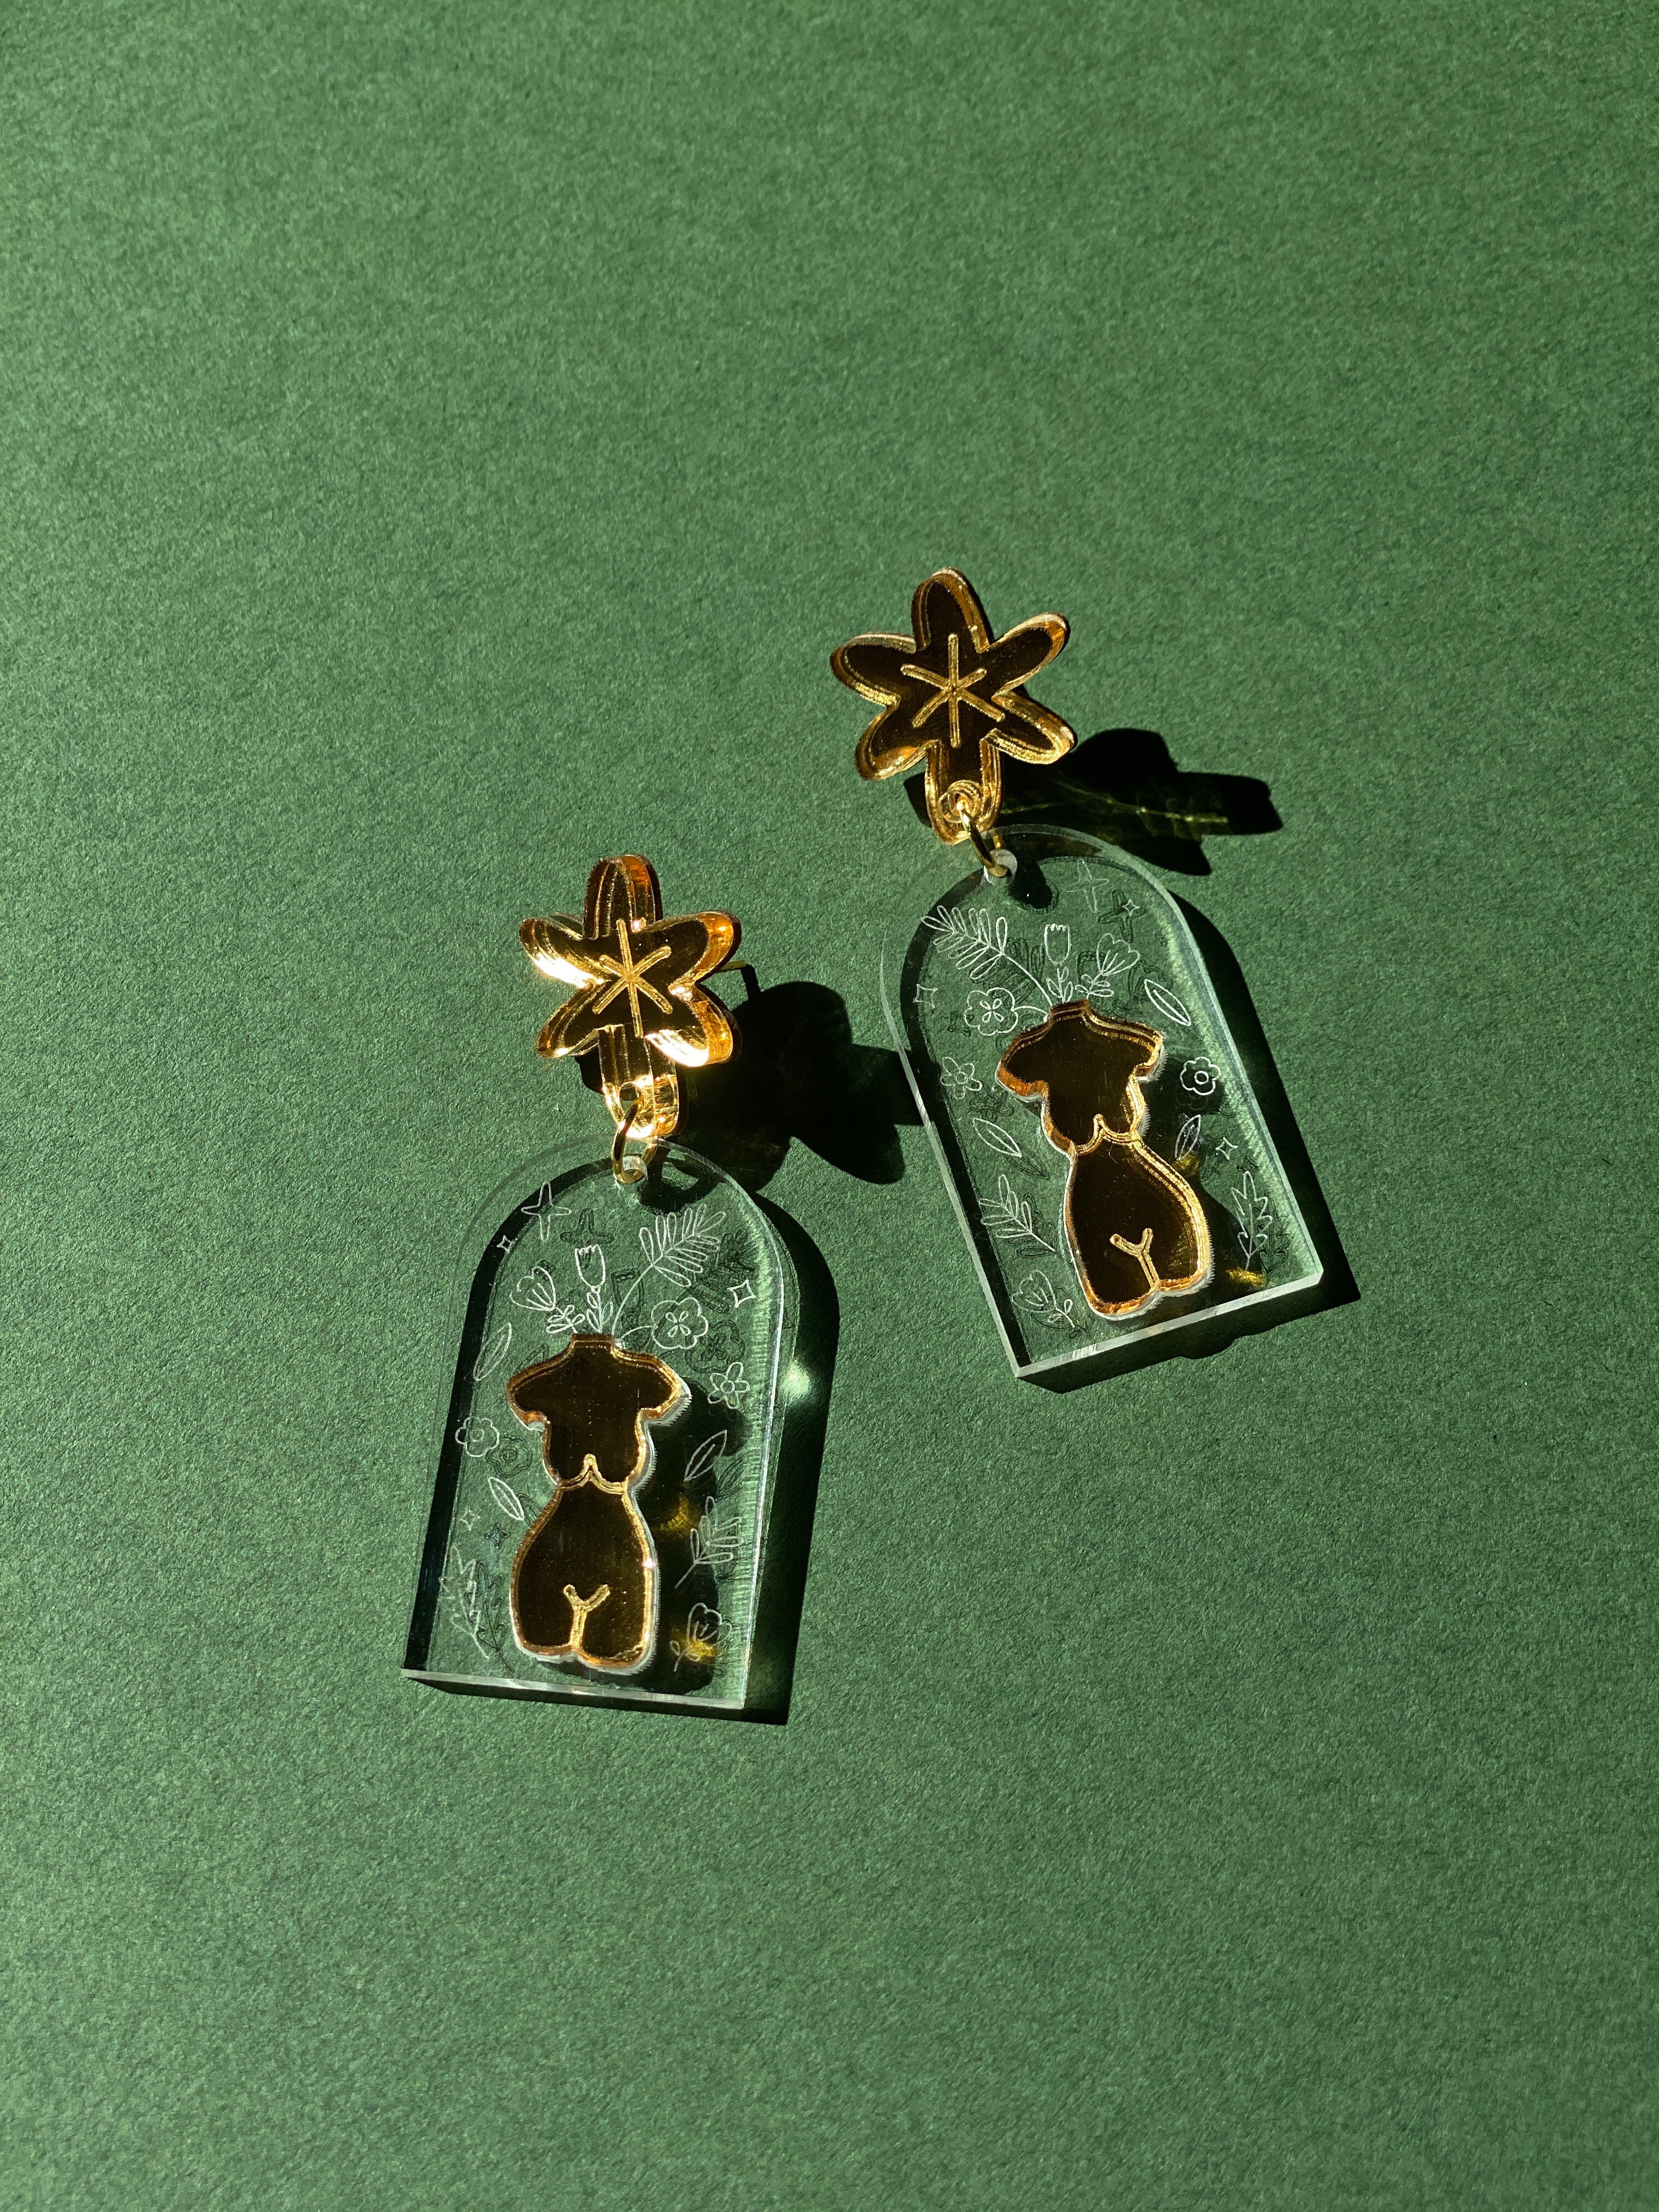 Arch de Femmes Earring in Crystaline by Lovelystrokes | Handmade Earrings